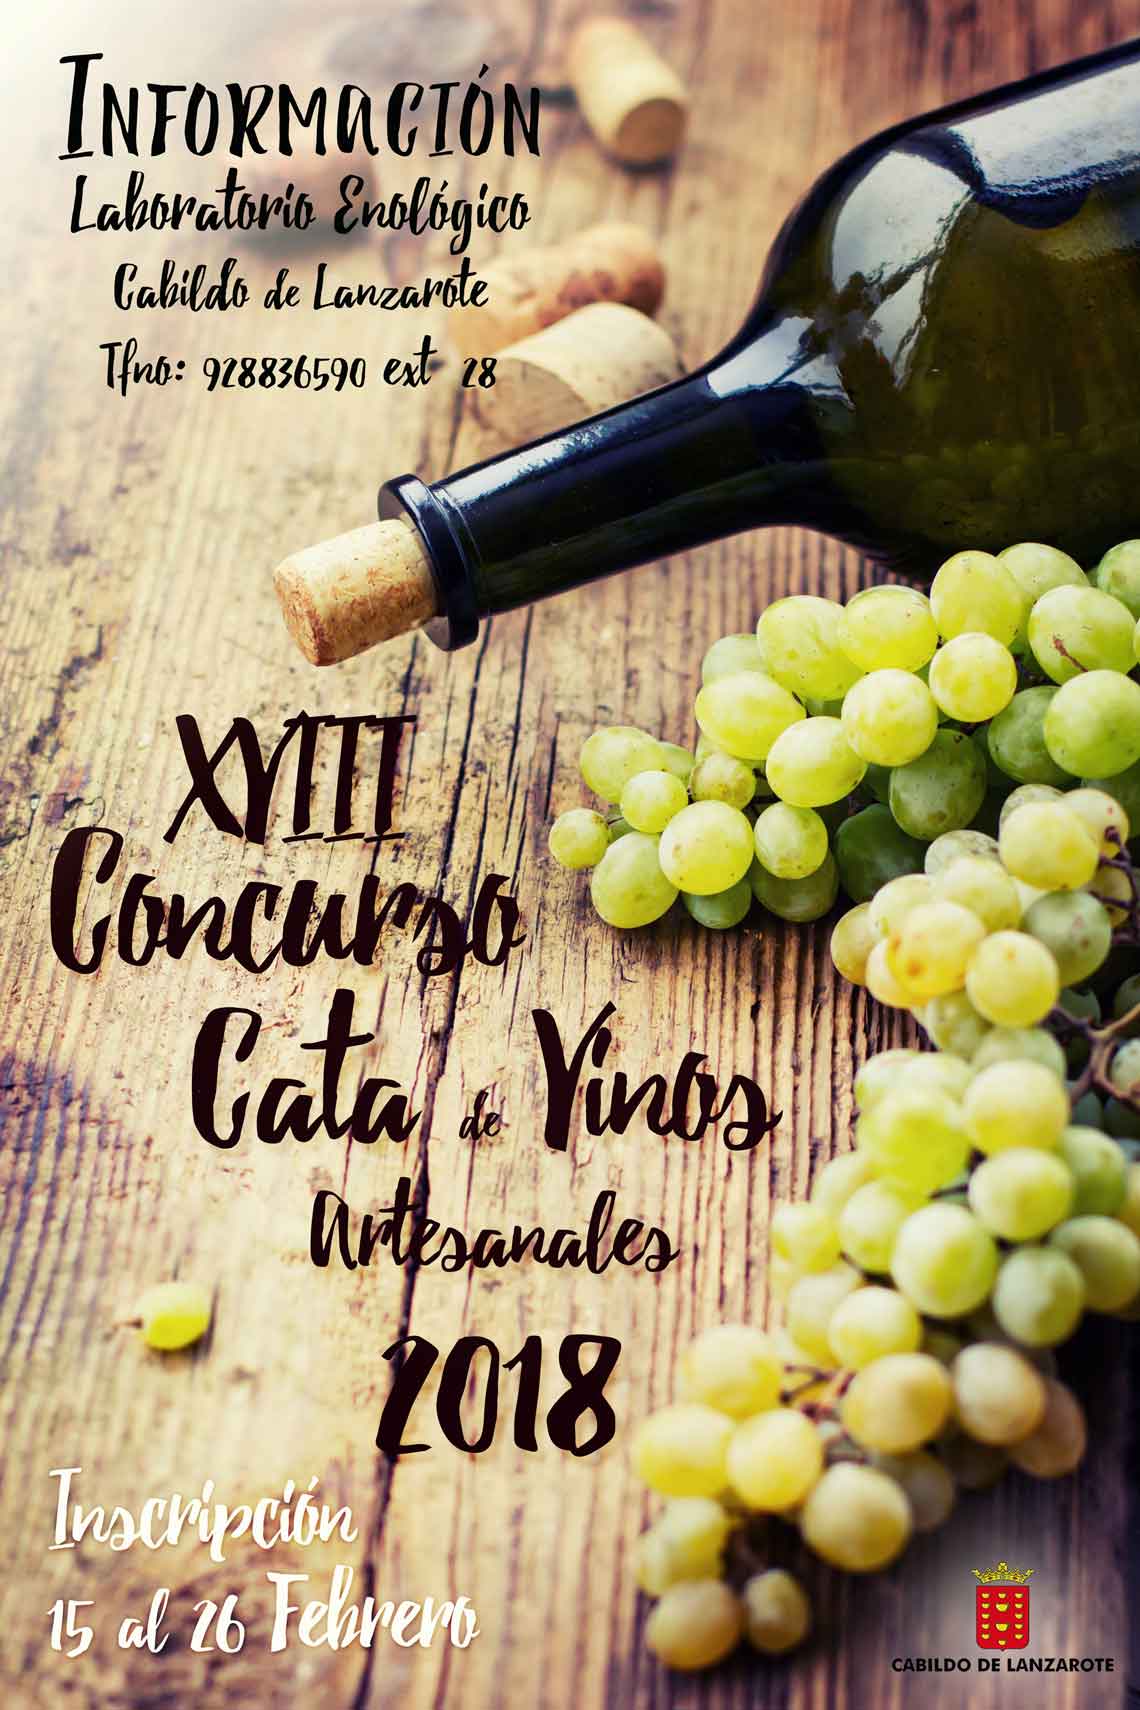 inscripcion XVIII Concurso de Cata de Vinos Artesanales